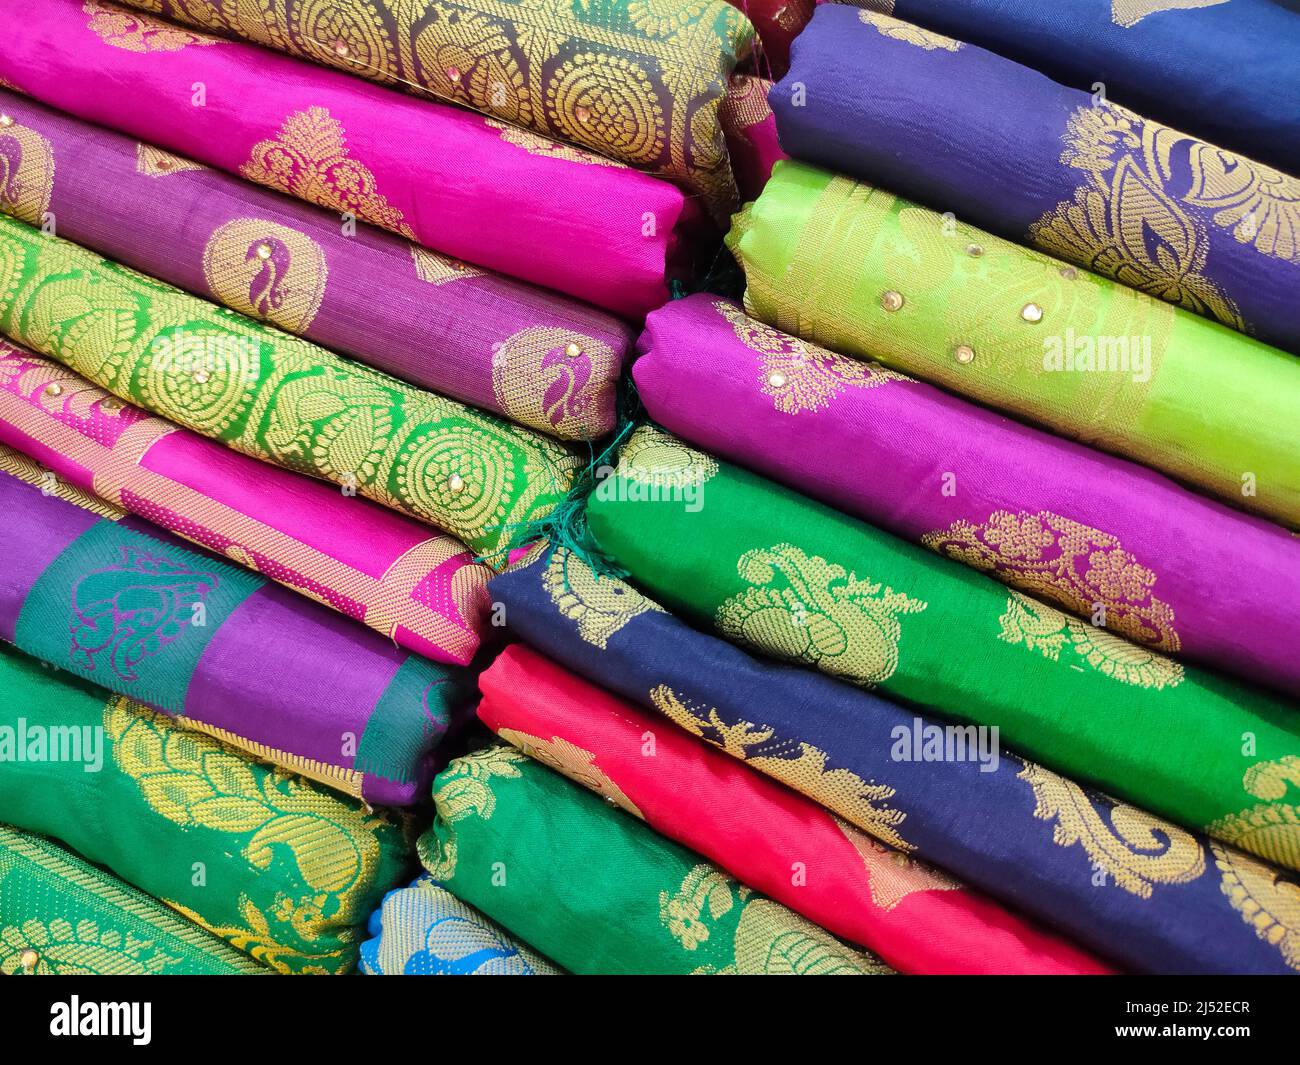 Rouleaux de tissus et textiles en magasin. Motifs indiens multicolores sur les tissus du marché en rouleaux. Magasin de tissus à Pune, Maharashtra, Inde. Banque D'Images